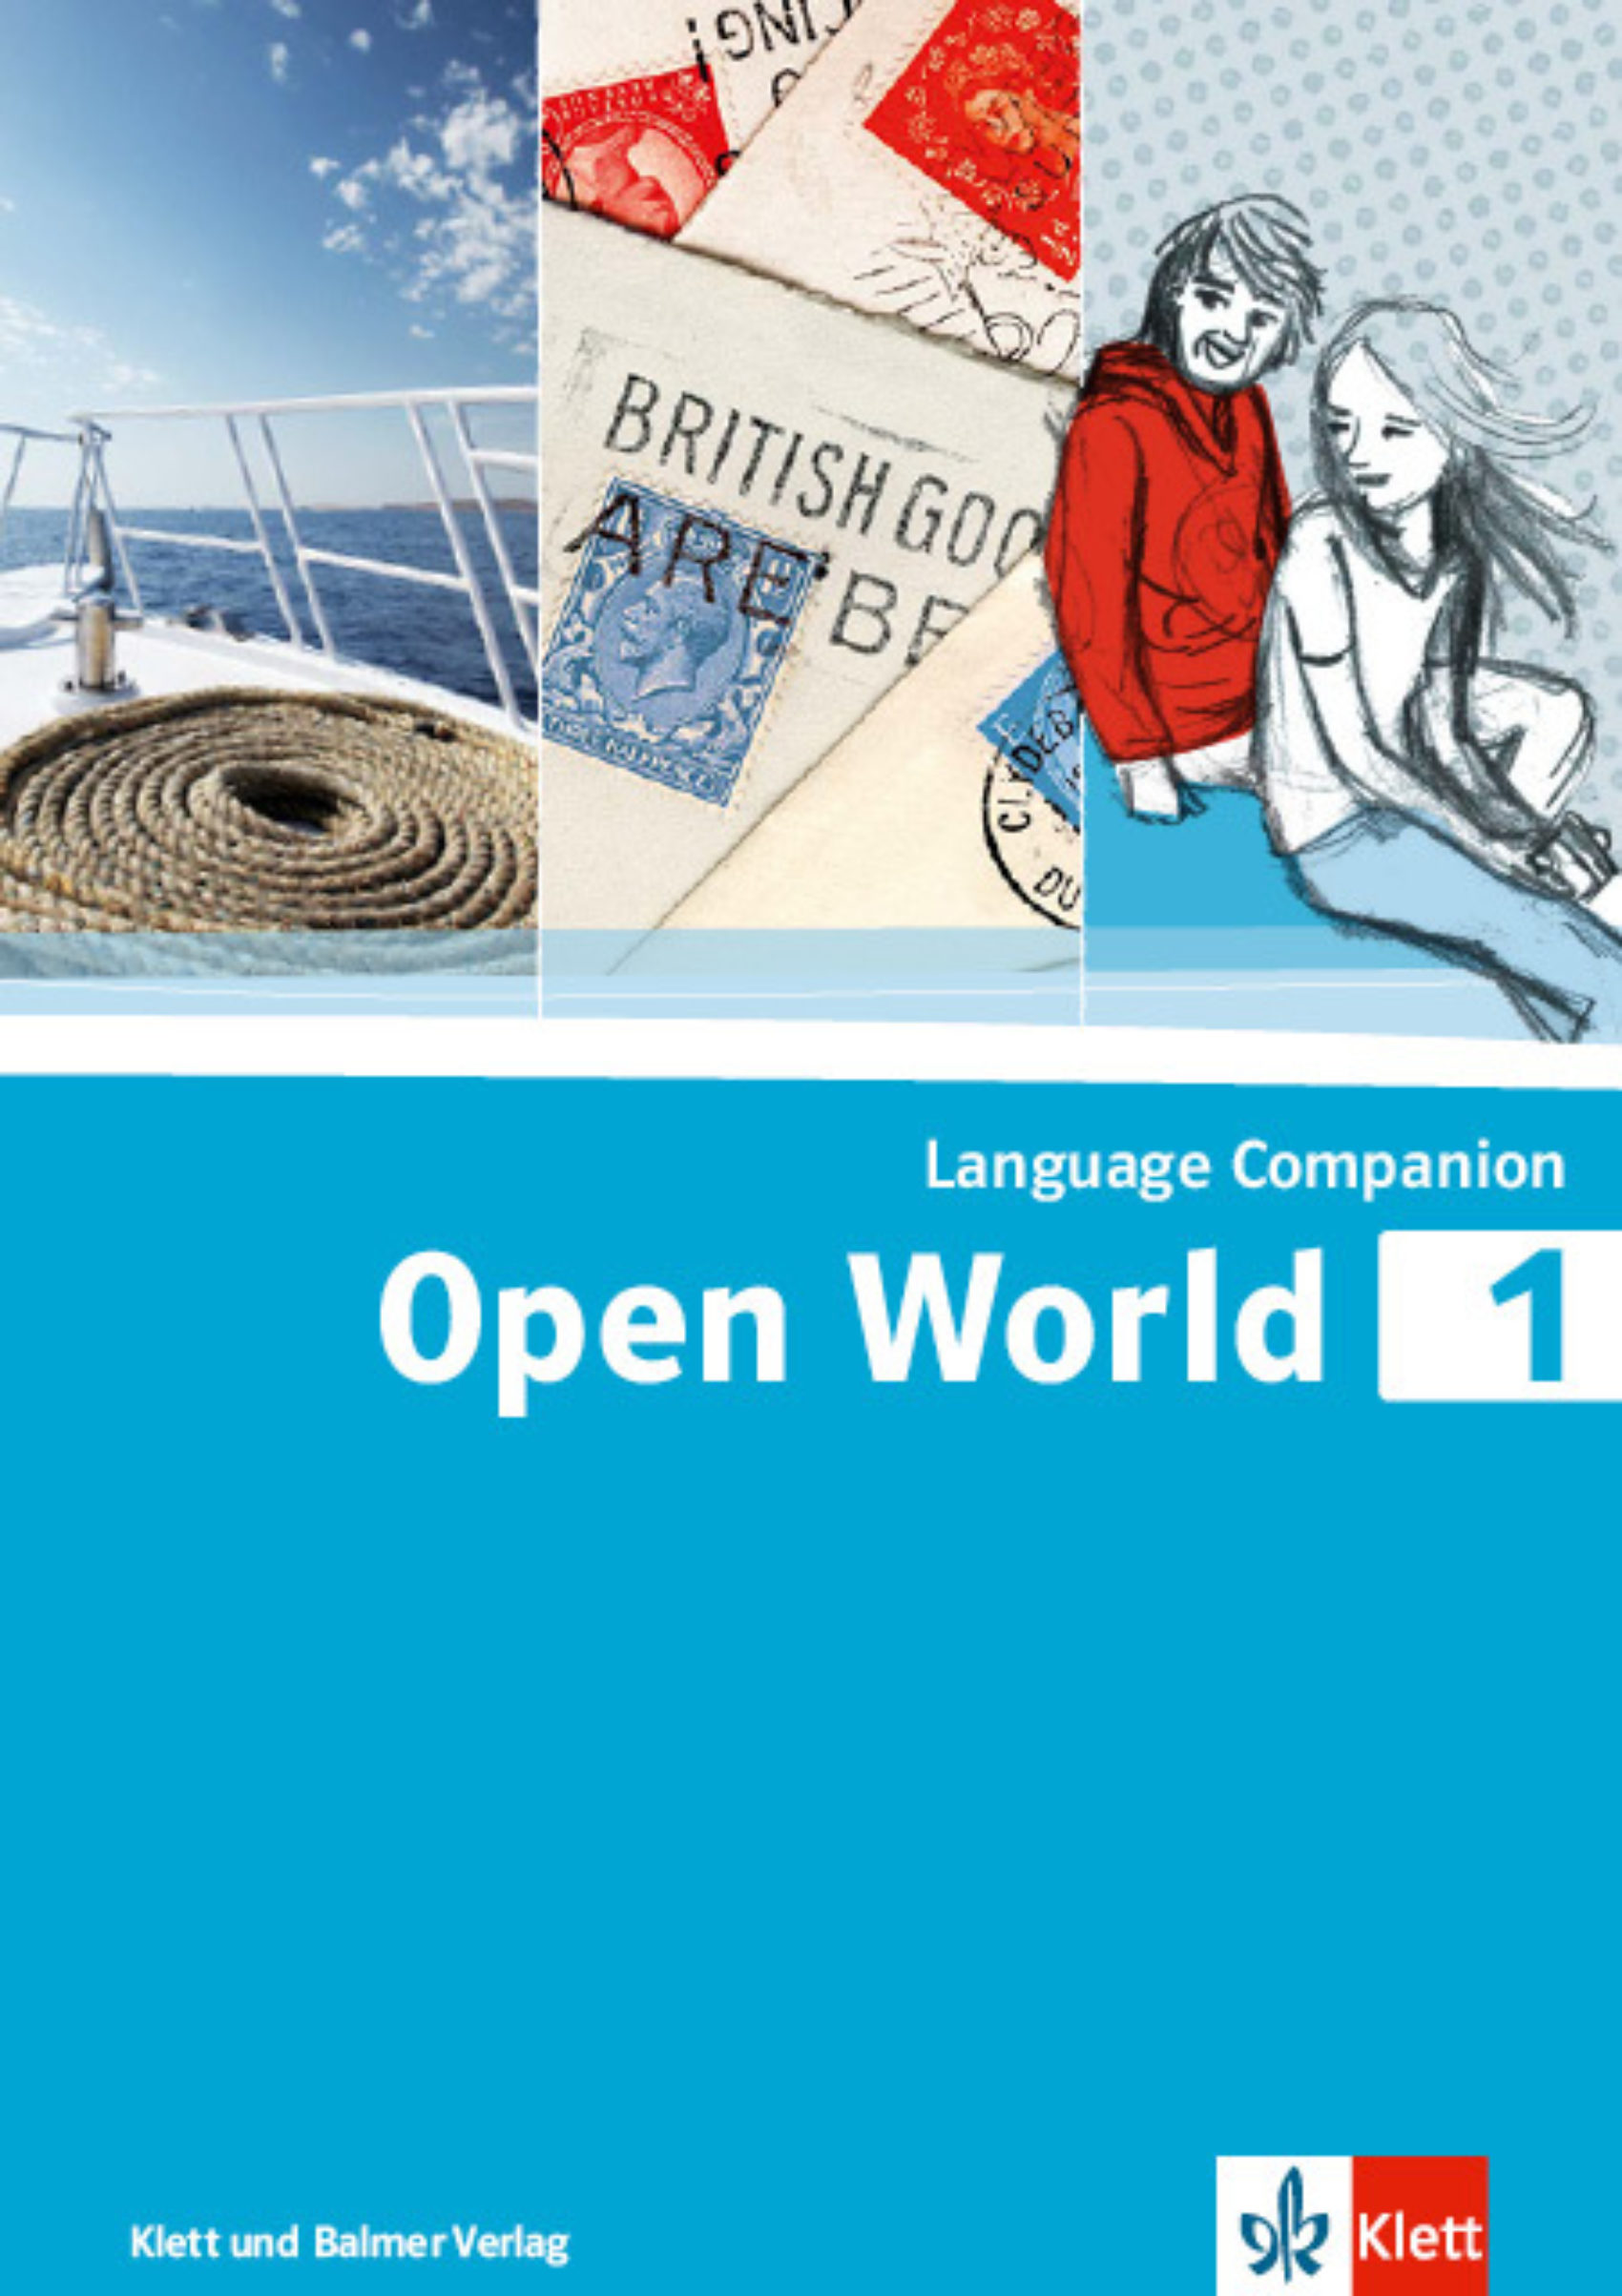 Language companion open world 1 978 3 264 84251 7 klett und balmer